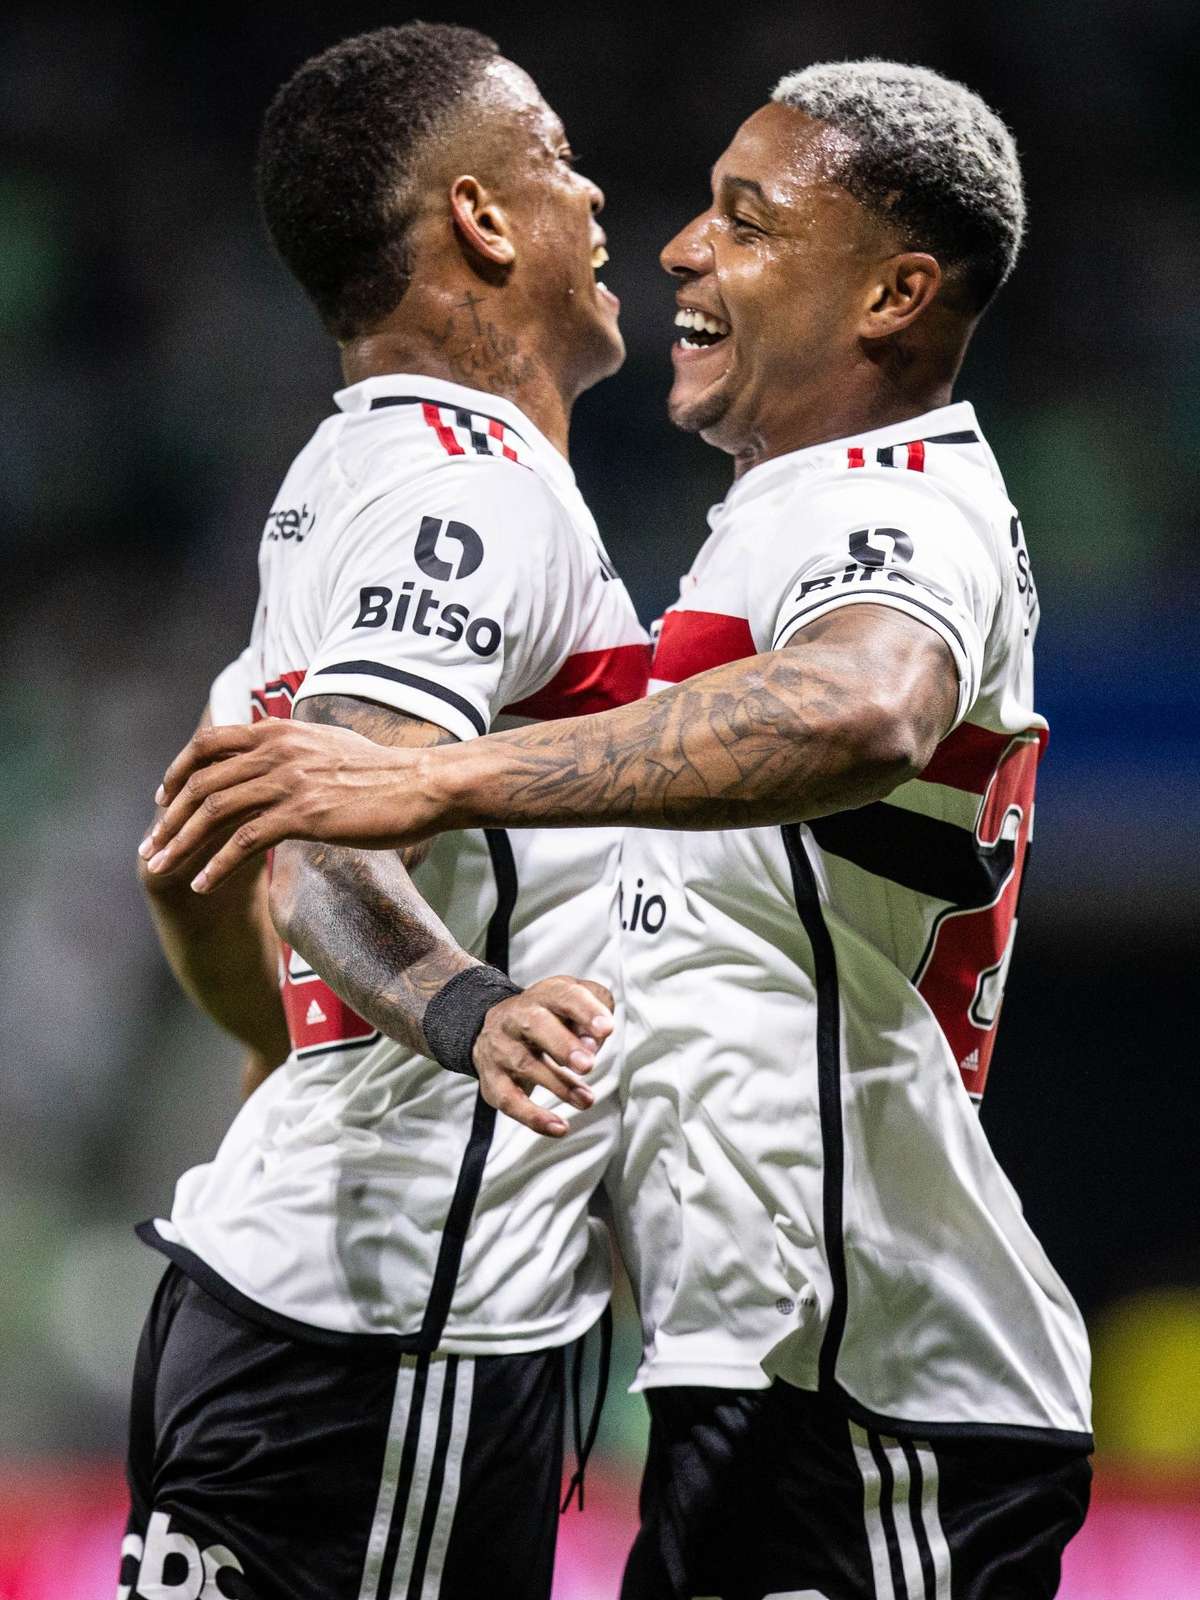 São Paulo avança para as quartas de final do Campeonato Paulista